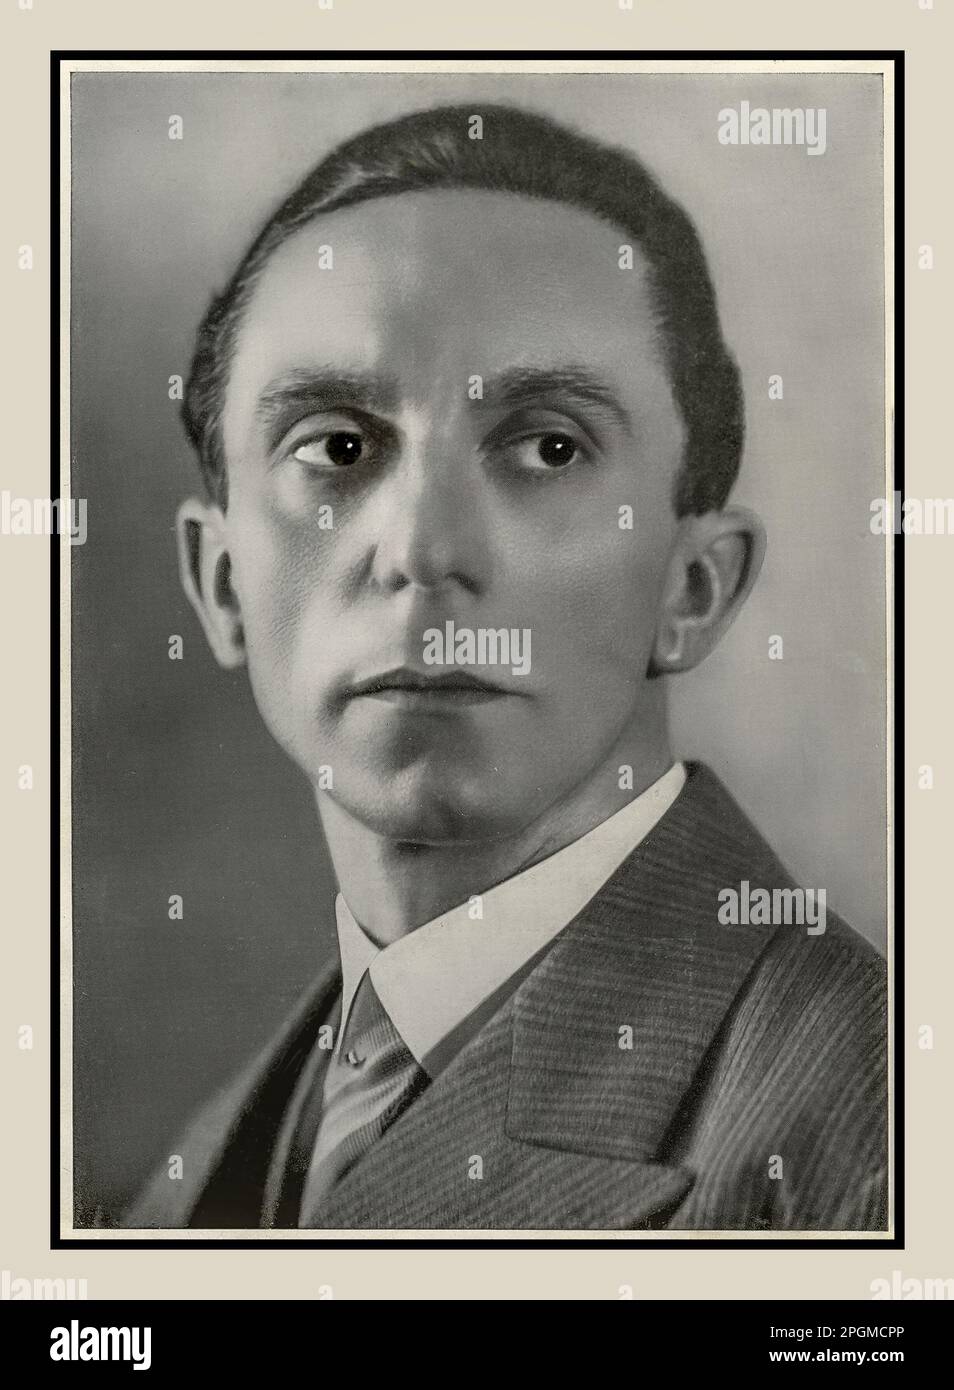 GOEBBELS 1930s Joseph Goebbels Portrait officiel de studio. Le Dr Paul Joseph Goebbels était un politicien nazi allemand qui était le gauleiter de Berlin, le propagandiste en chef du Parti nazi, puis le ministre de la propagande de Reich de 1933 à 1945 lorsqu'il a commis un suicide dans le bunker de Berlin Hitlers pour échapper à l'arrestation des forces alliées en progression. Banque D'Images